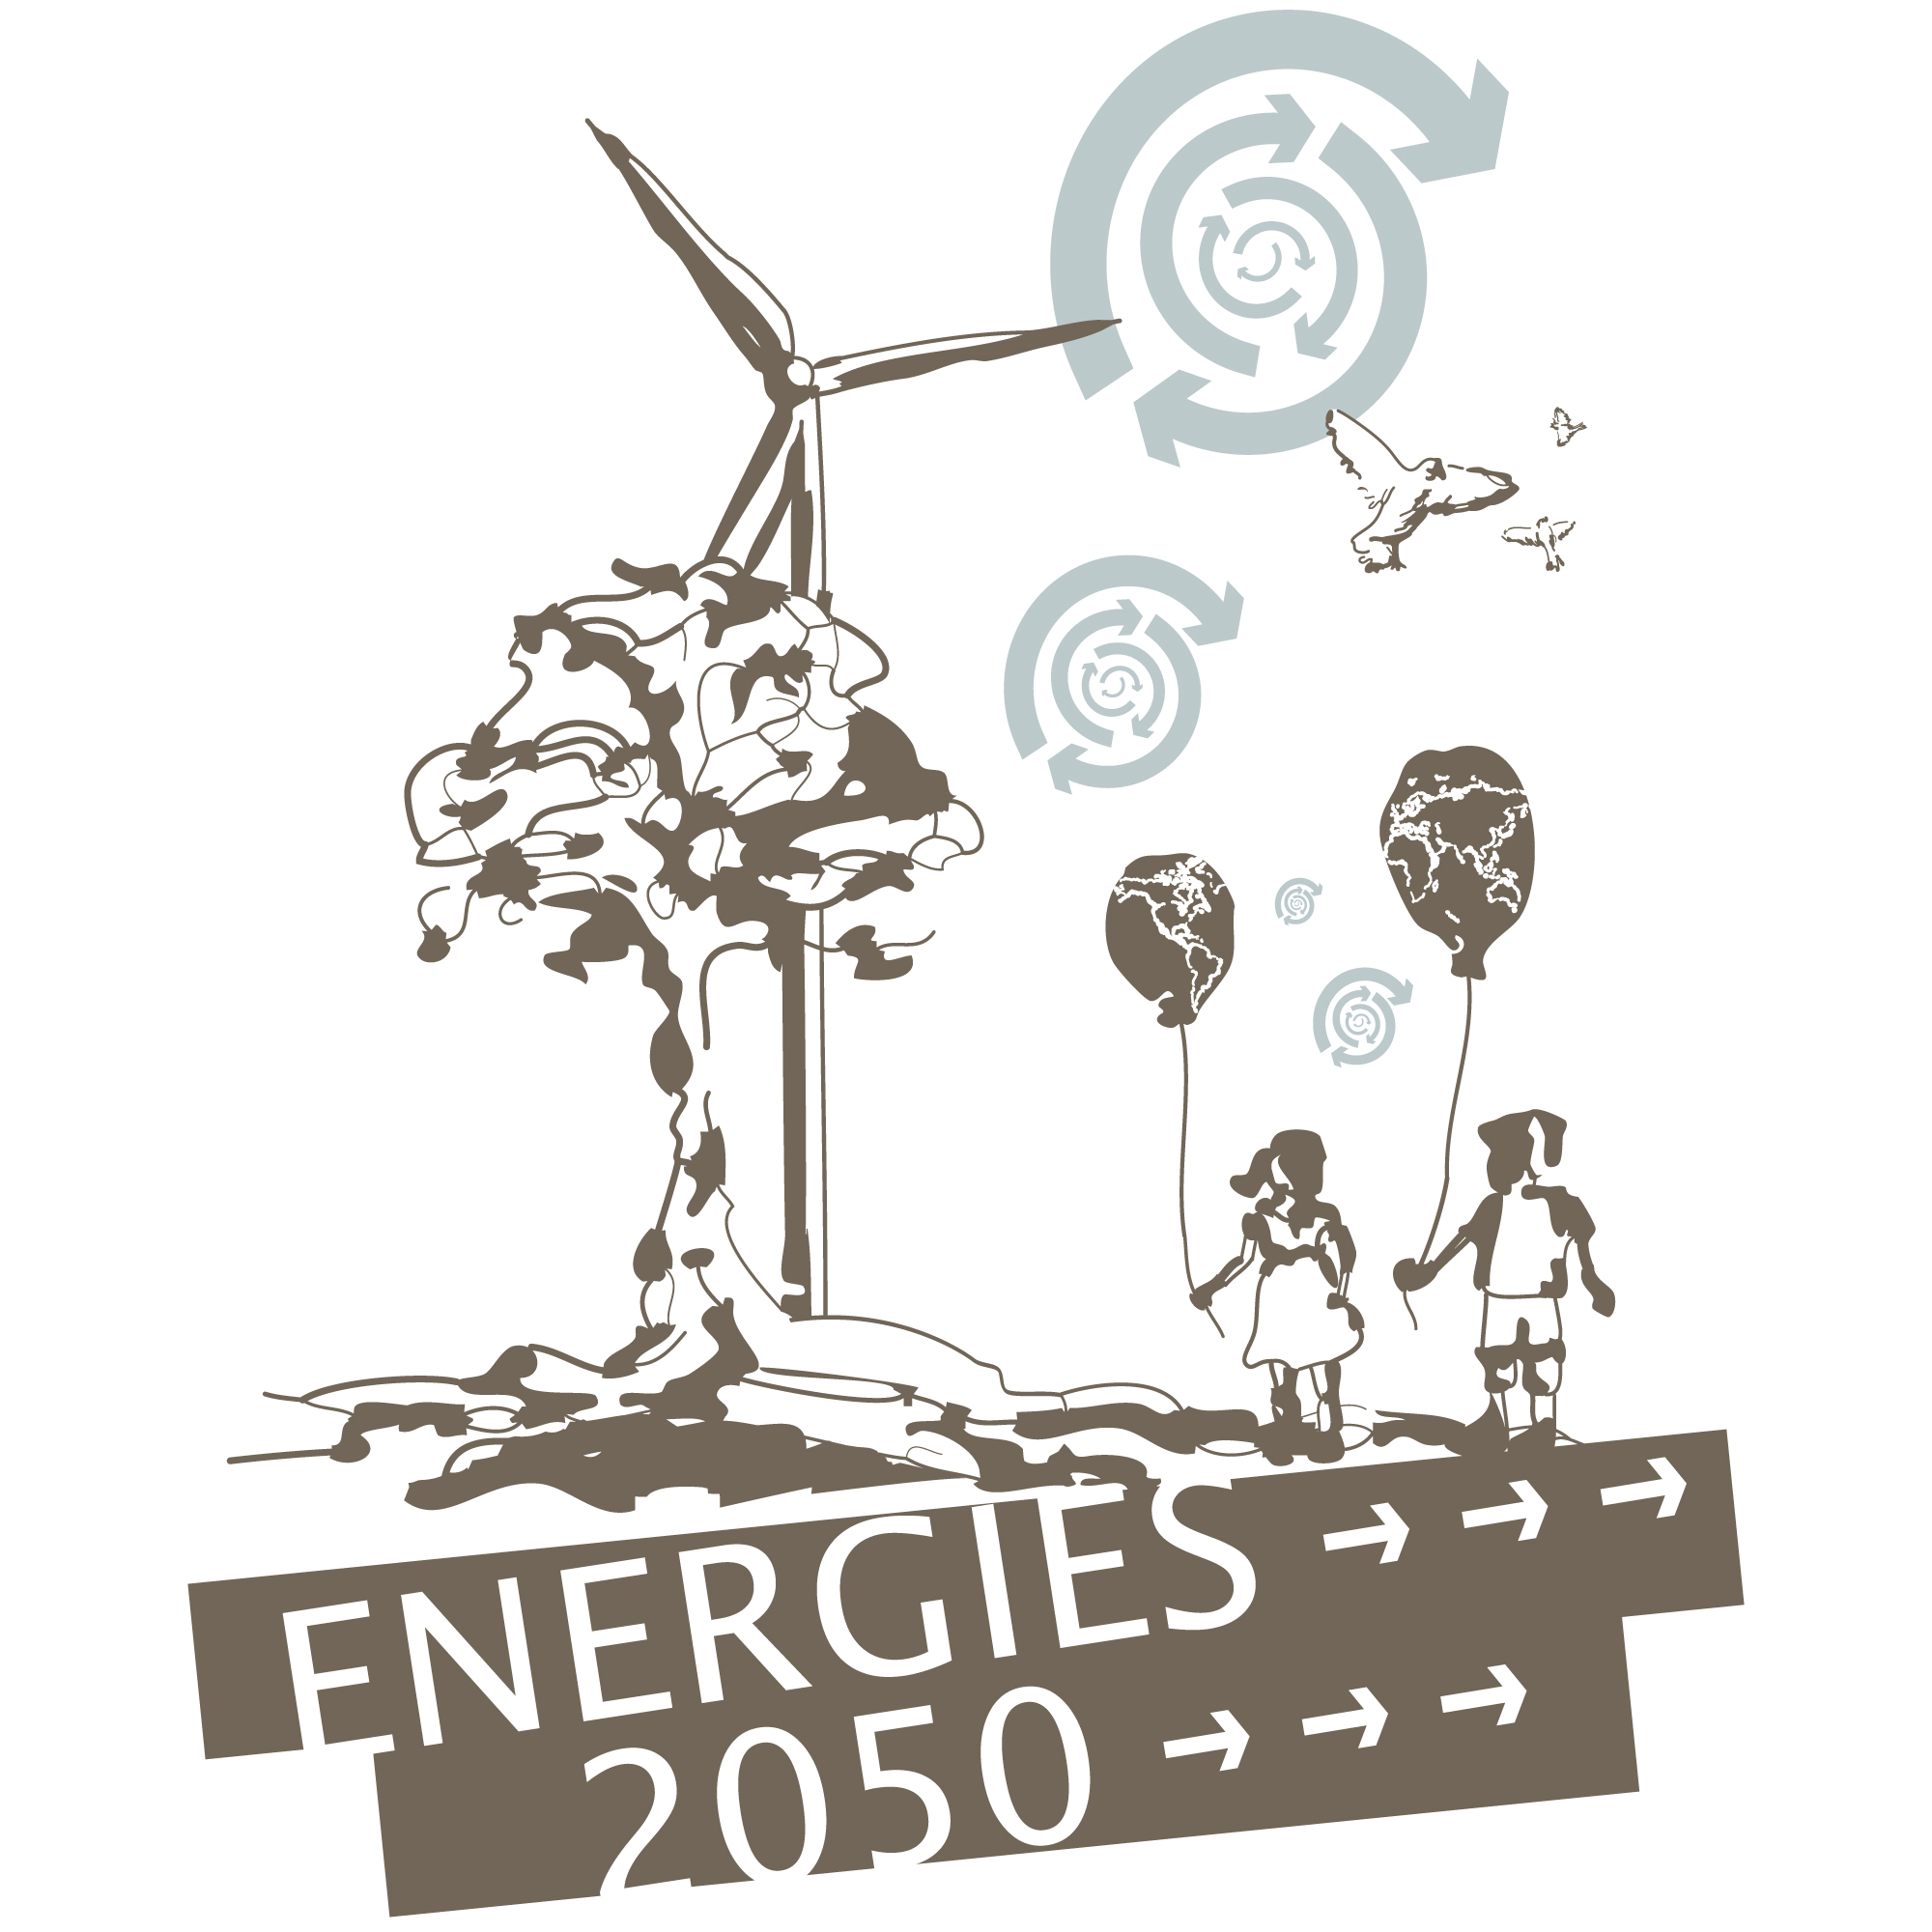 Company ENERGIES 2050